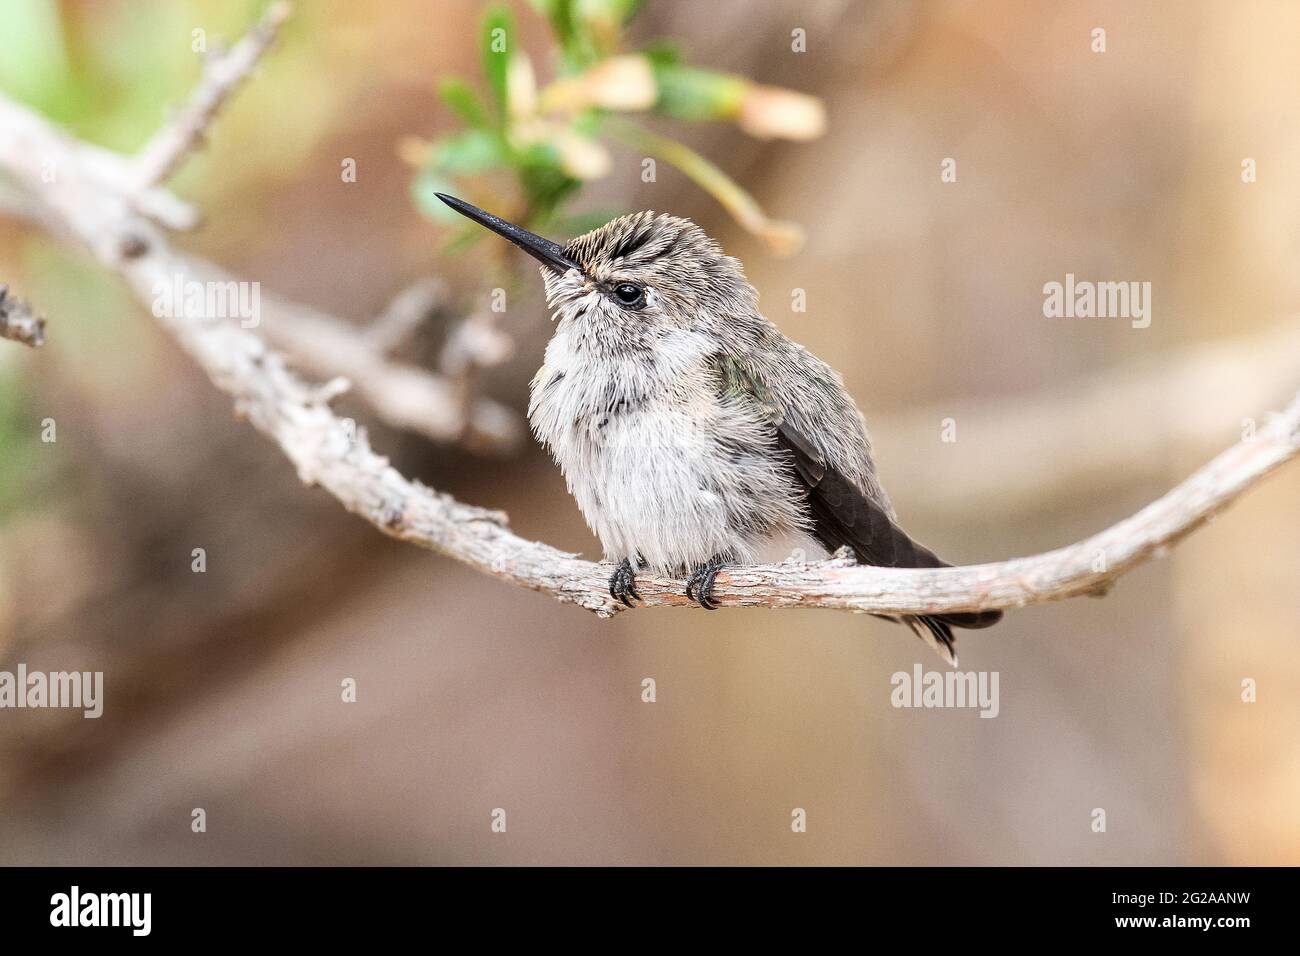 Junger Kolibri, der aus dem Schlaf erwacht. Ein junger Kolibri, der auf einem Baumzweig thront, wacht aus dem Schlaf mit flauschigen Federn auf, der Hintergrund ist verschwommen. Stockfoto